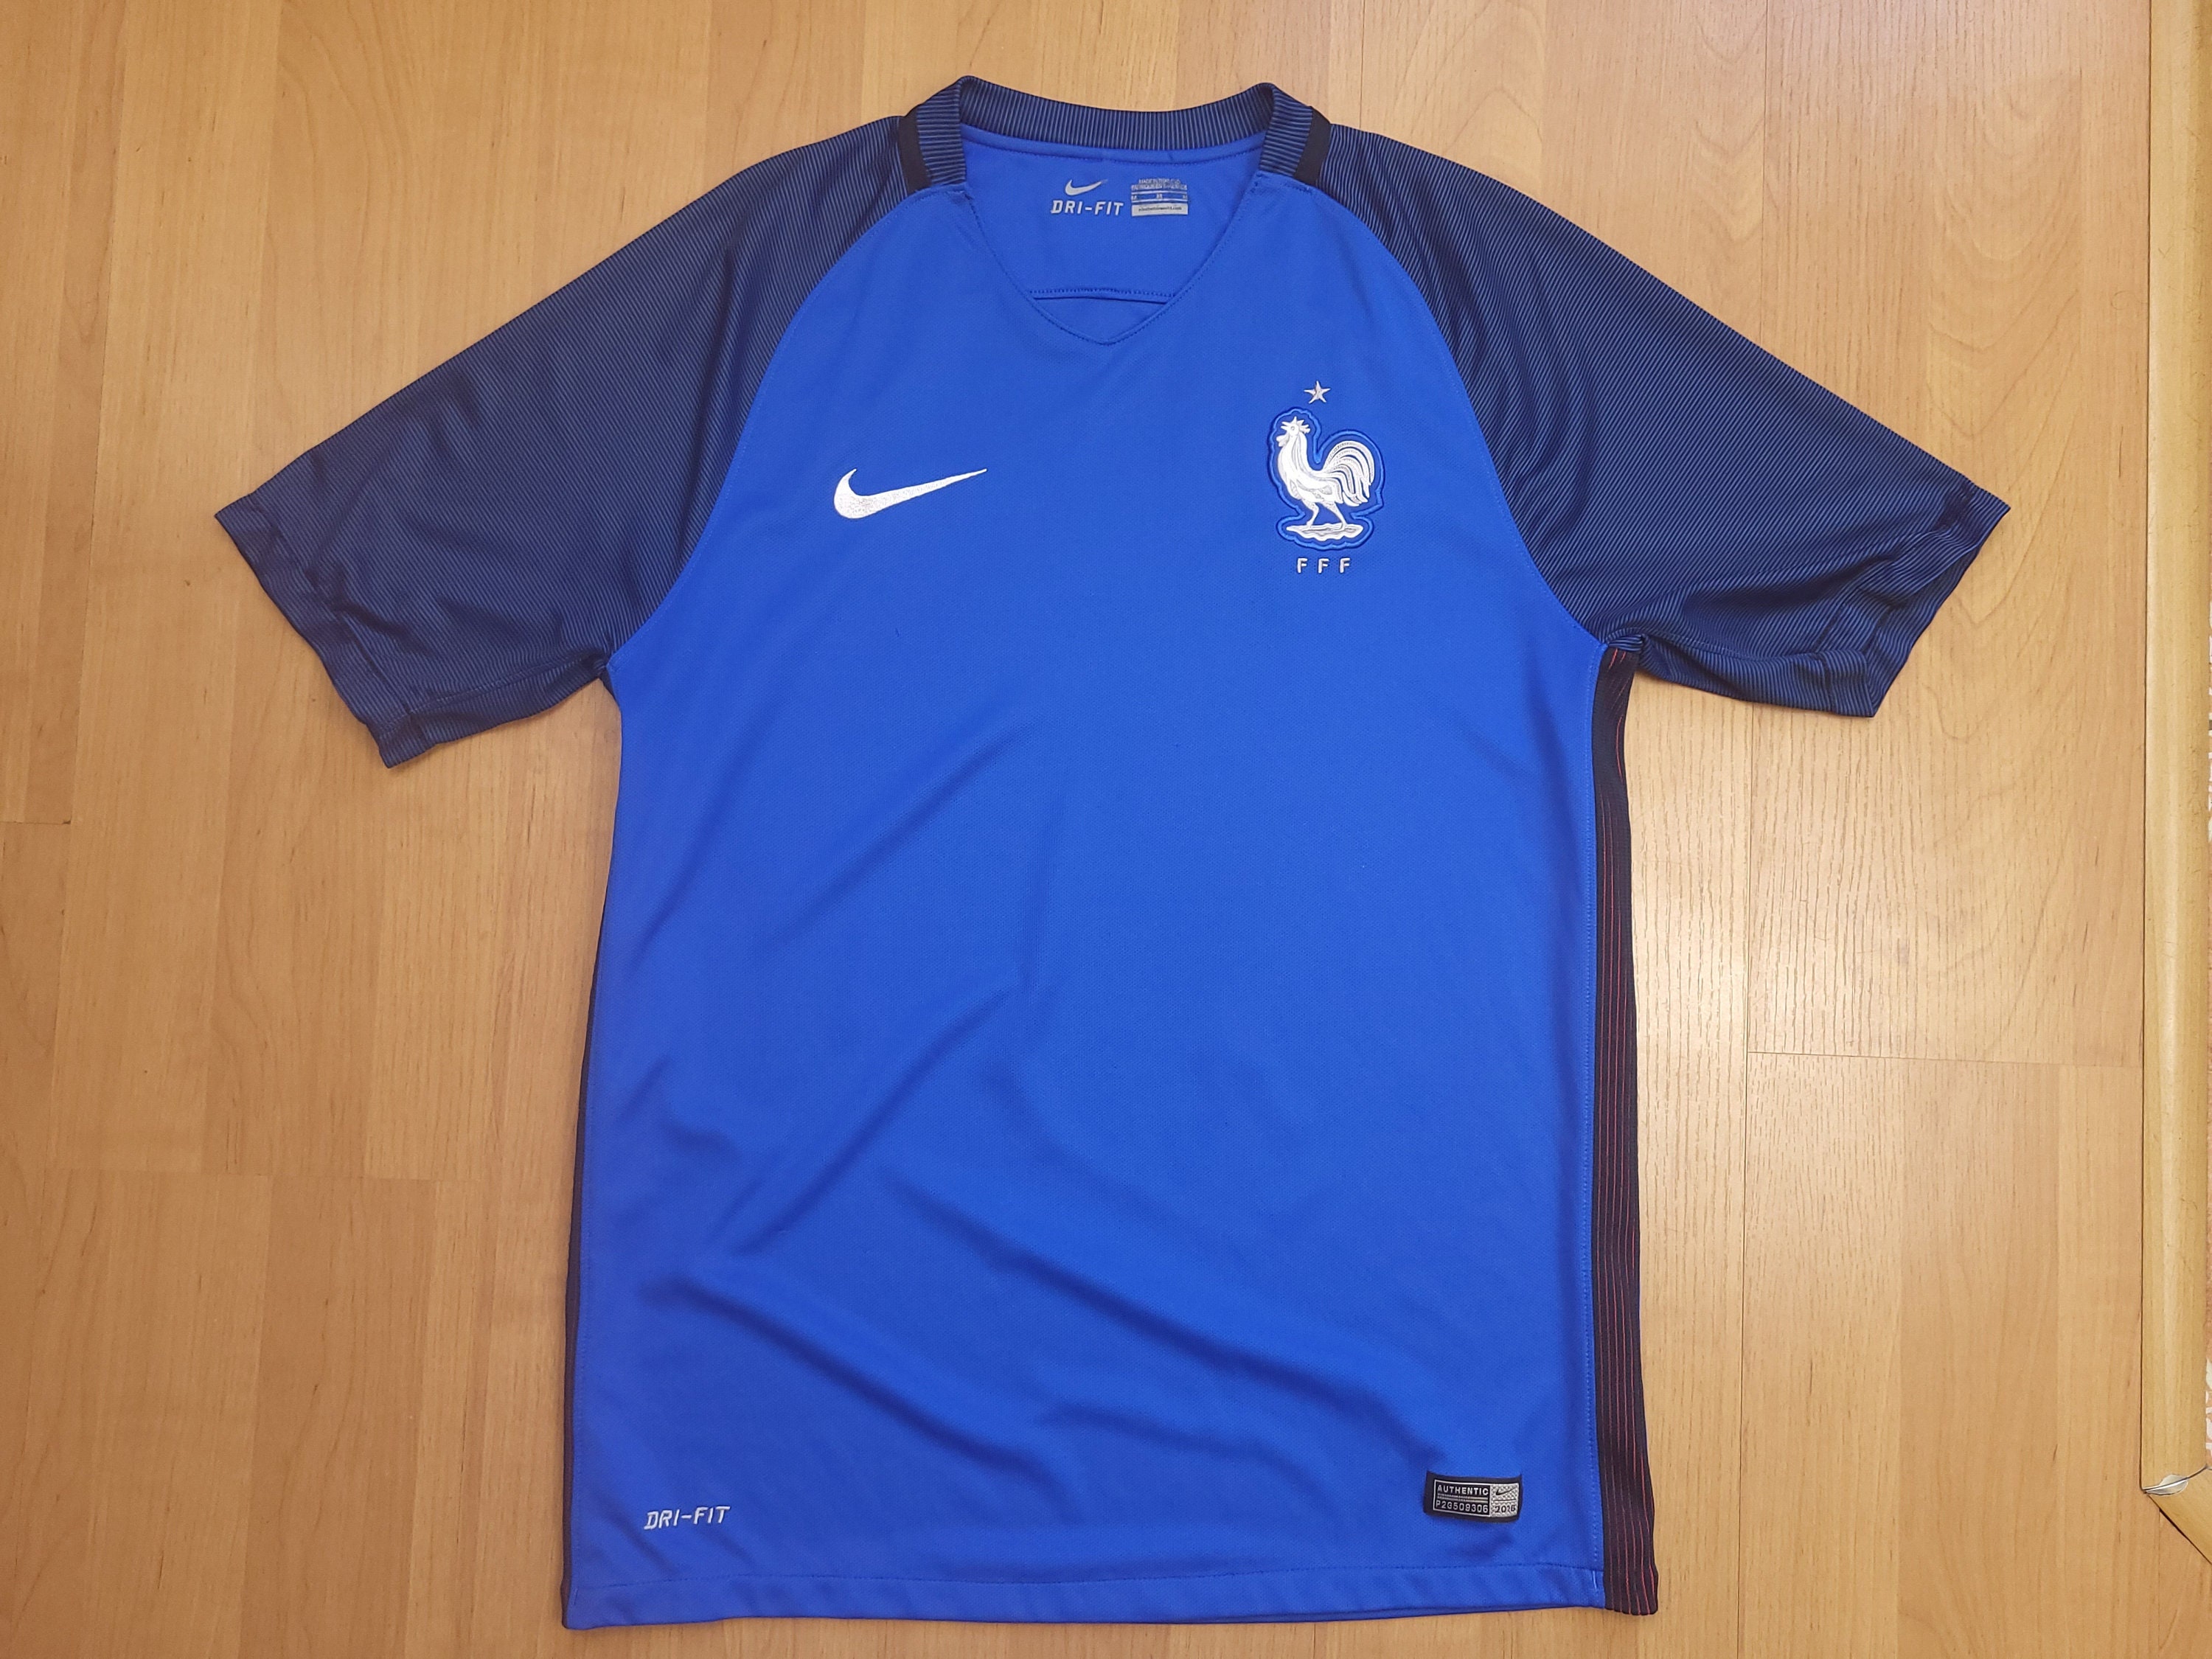 Eurocopa 2016 Nike Francia Home Authentic Football Shirt FFF - España